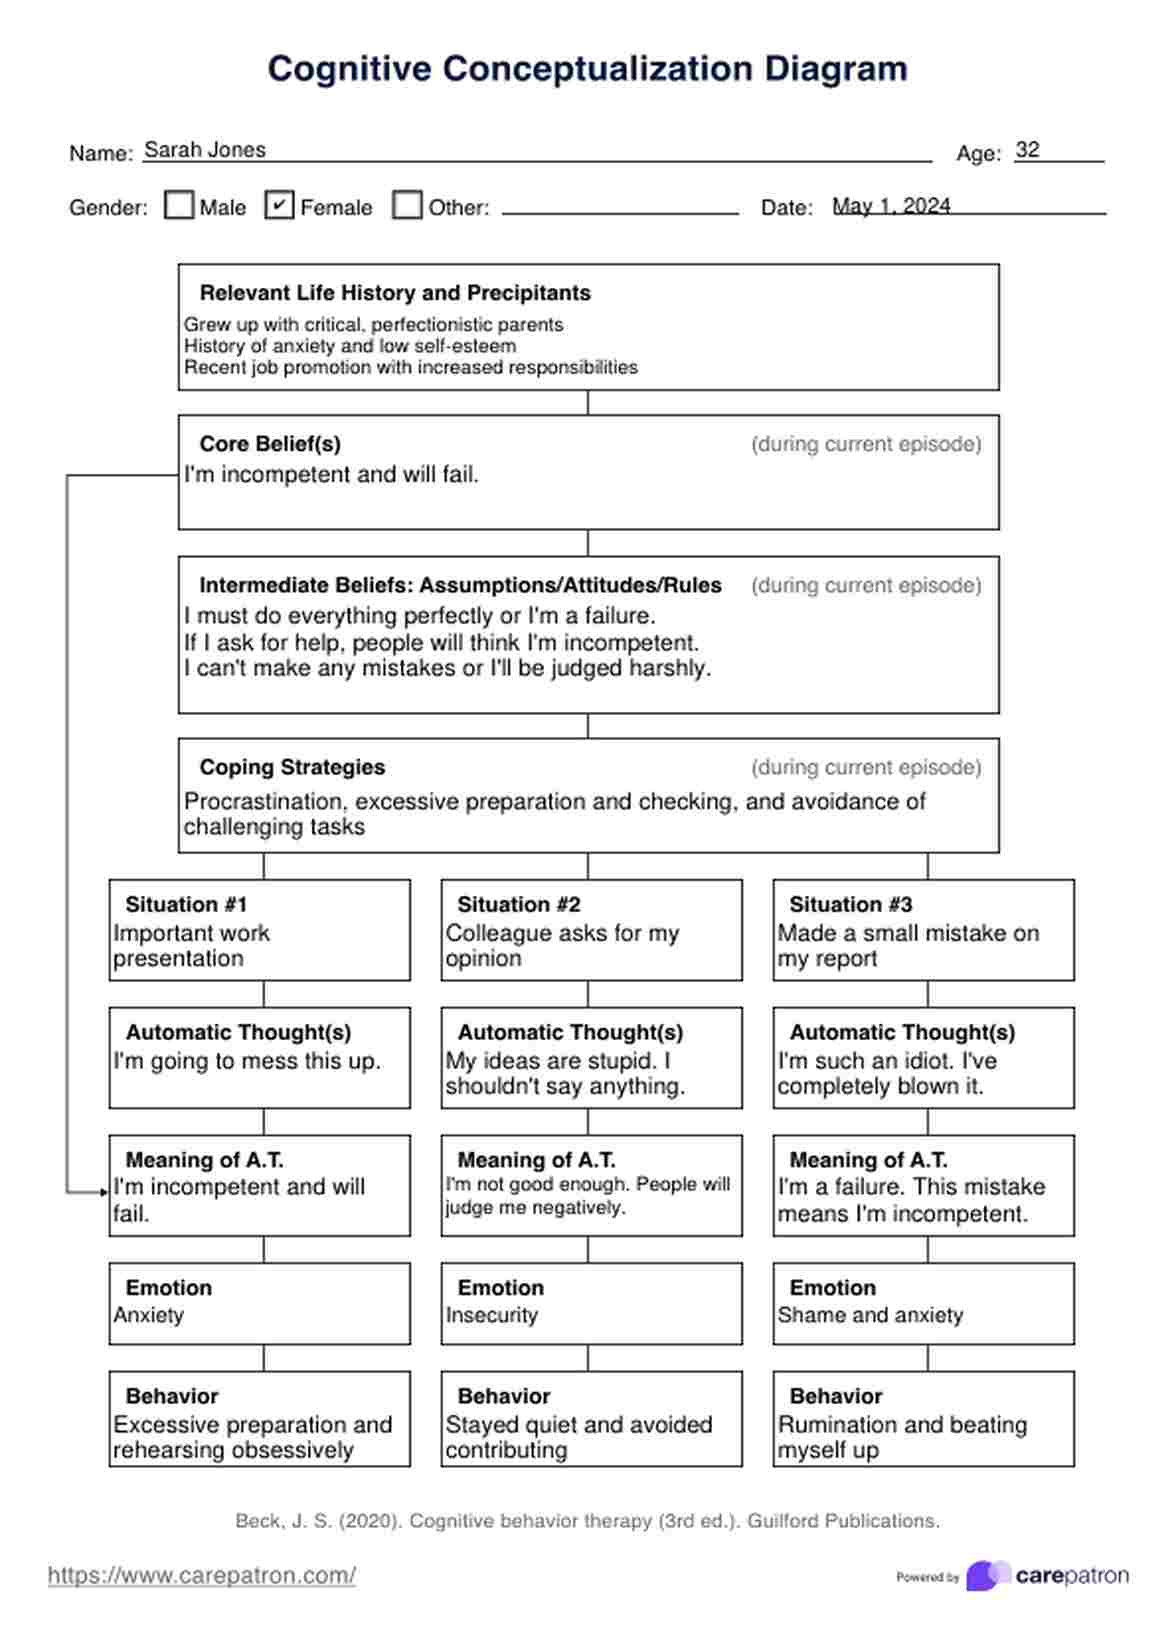 Cognitive Conceptualization Diagram PDF Example